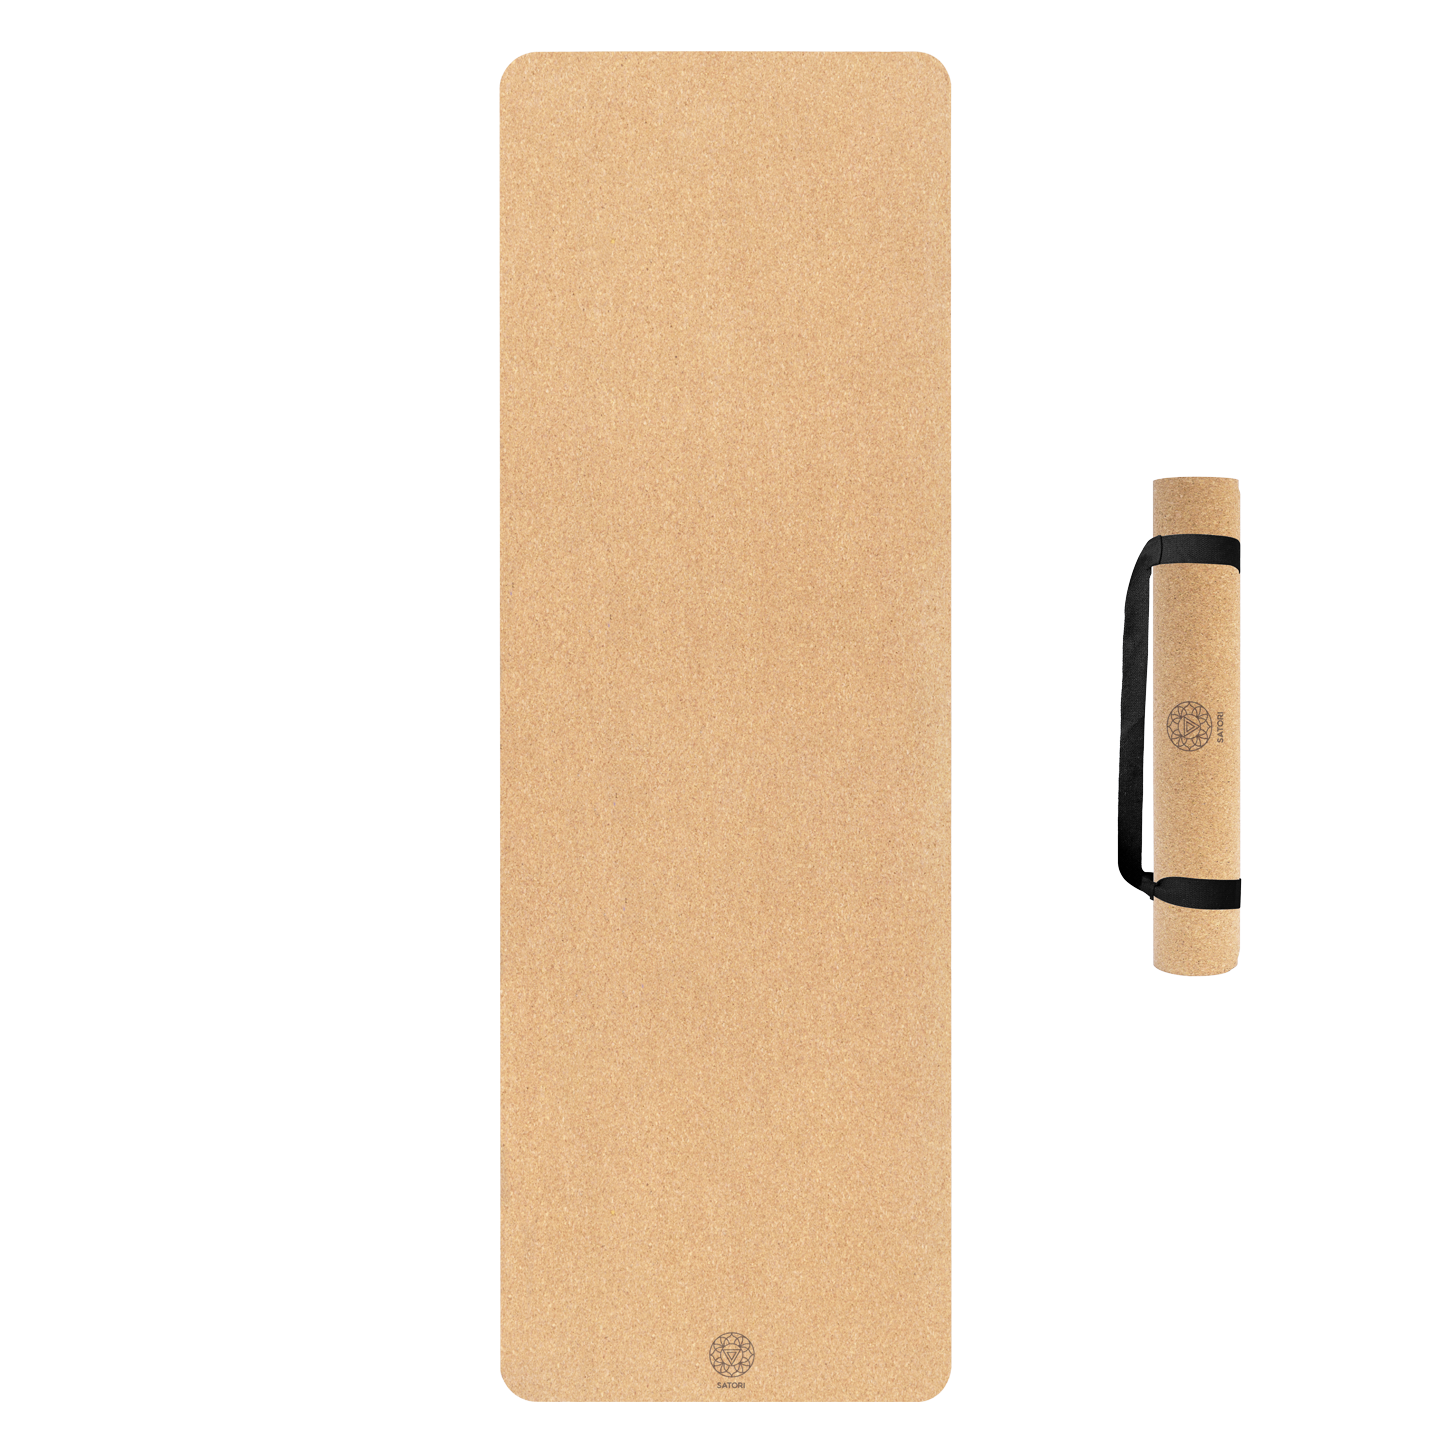 SatoriConcept Eco Cork Yoga Mat, 4mm, 72x24, Non Slip, Hot Yoga